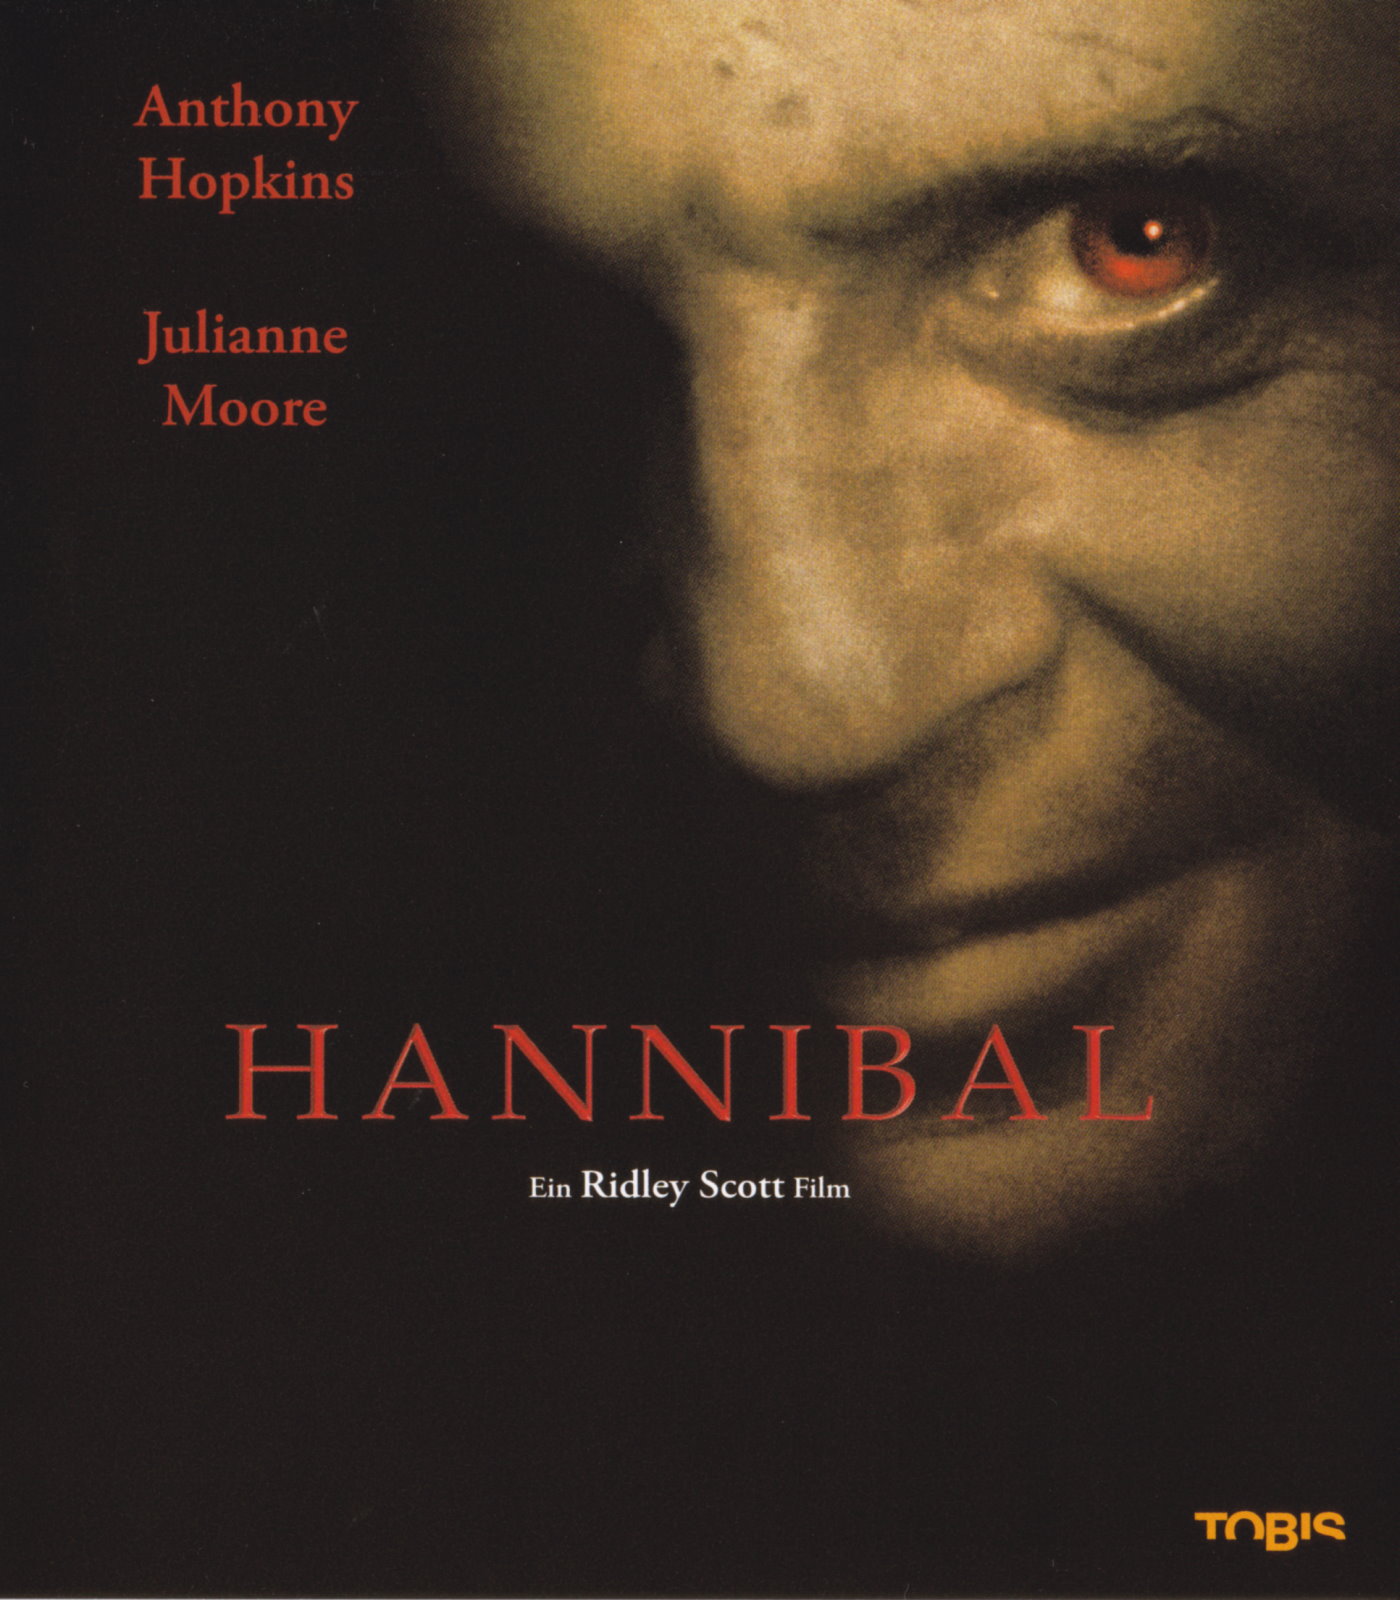 Cover - Hannibal.jpg